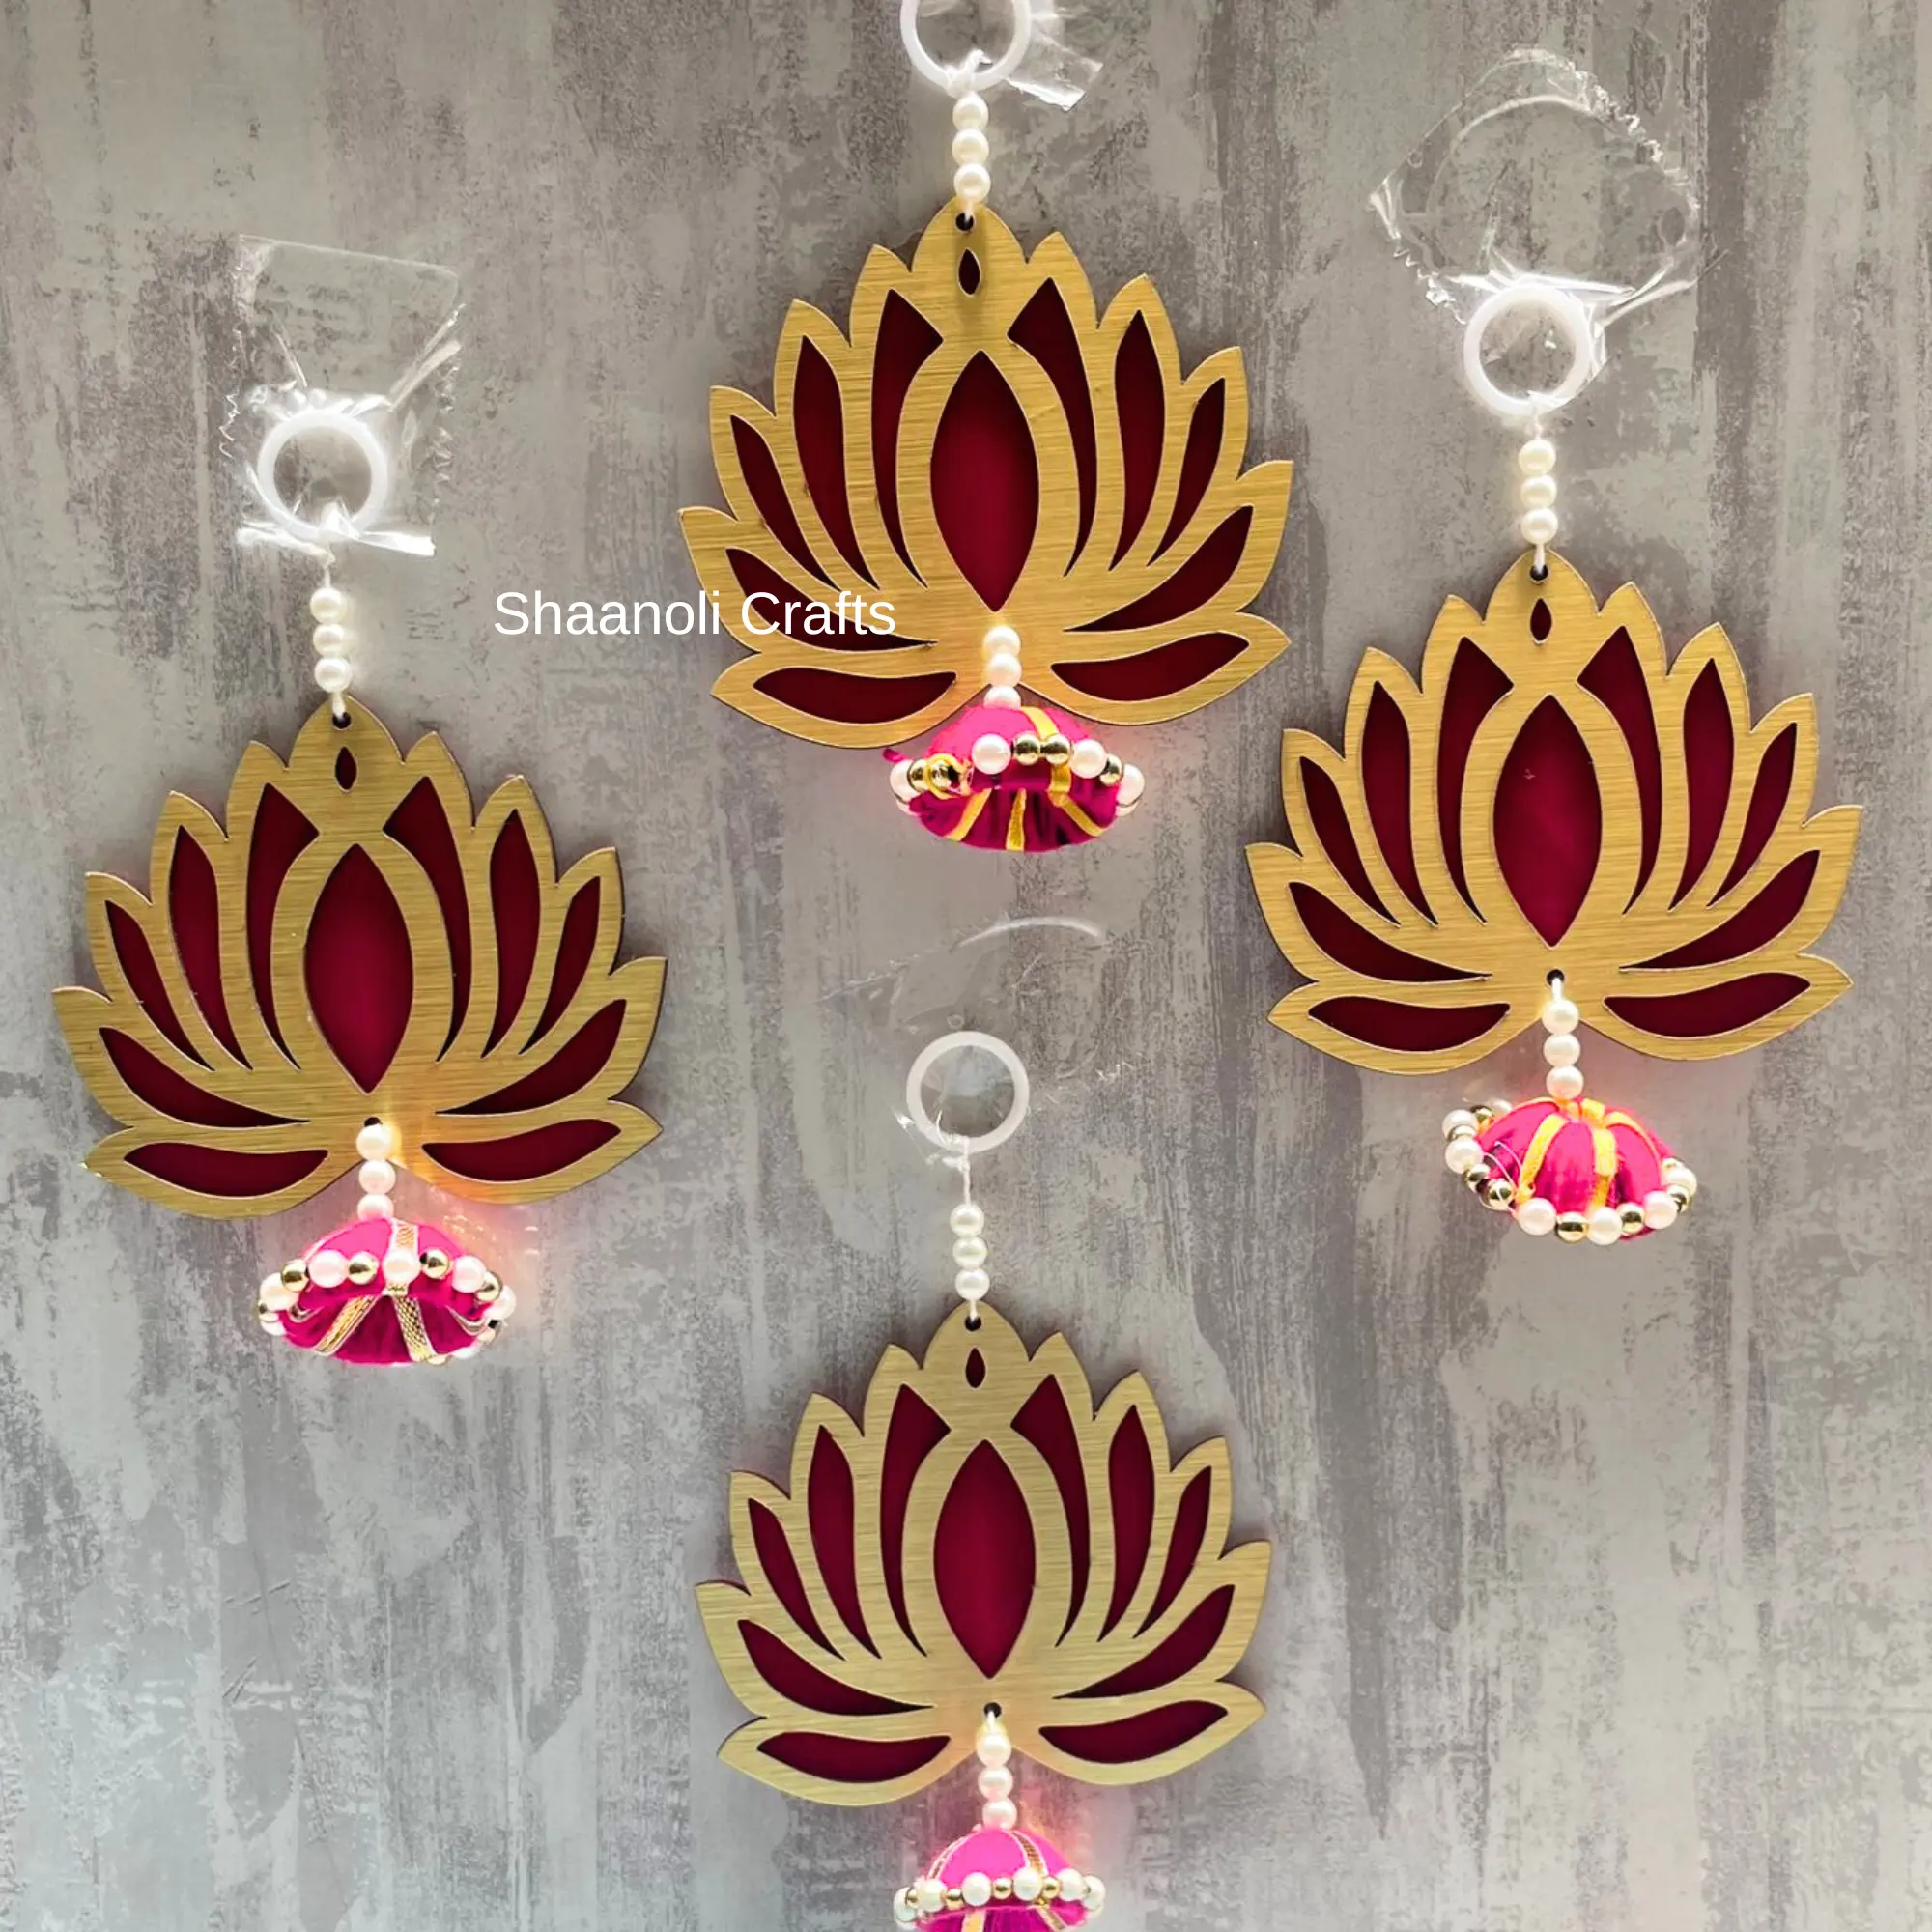 MDF künstliche handgemachte Lotus-Aufhängungen für Dekoration hängend für Zuhause blumenwandhängungen für Tempel Hochzeitsdekoration